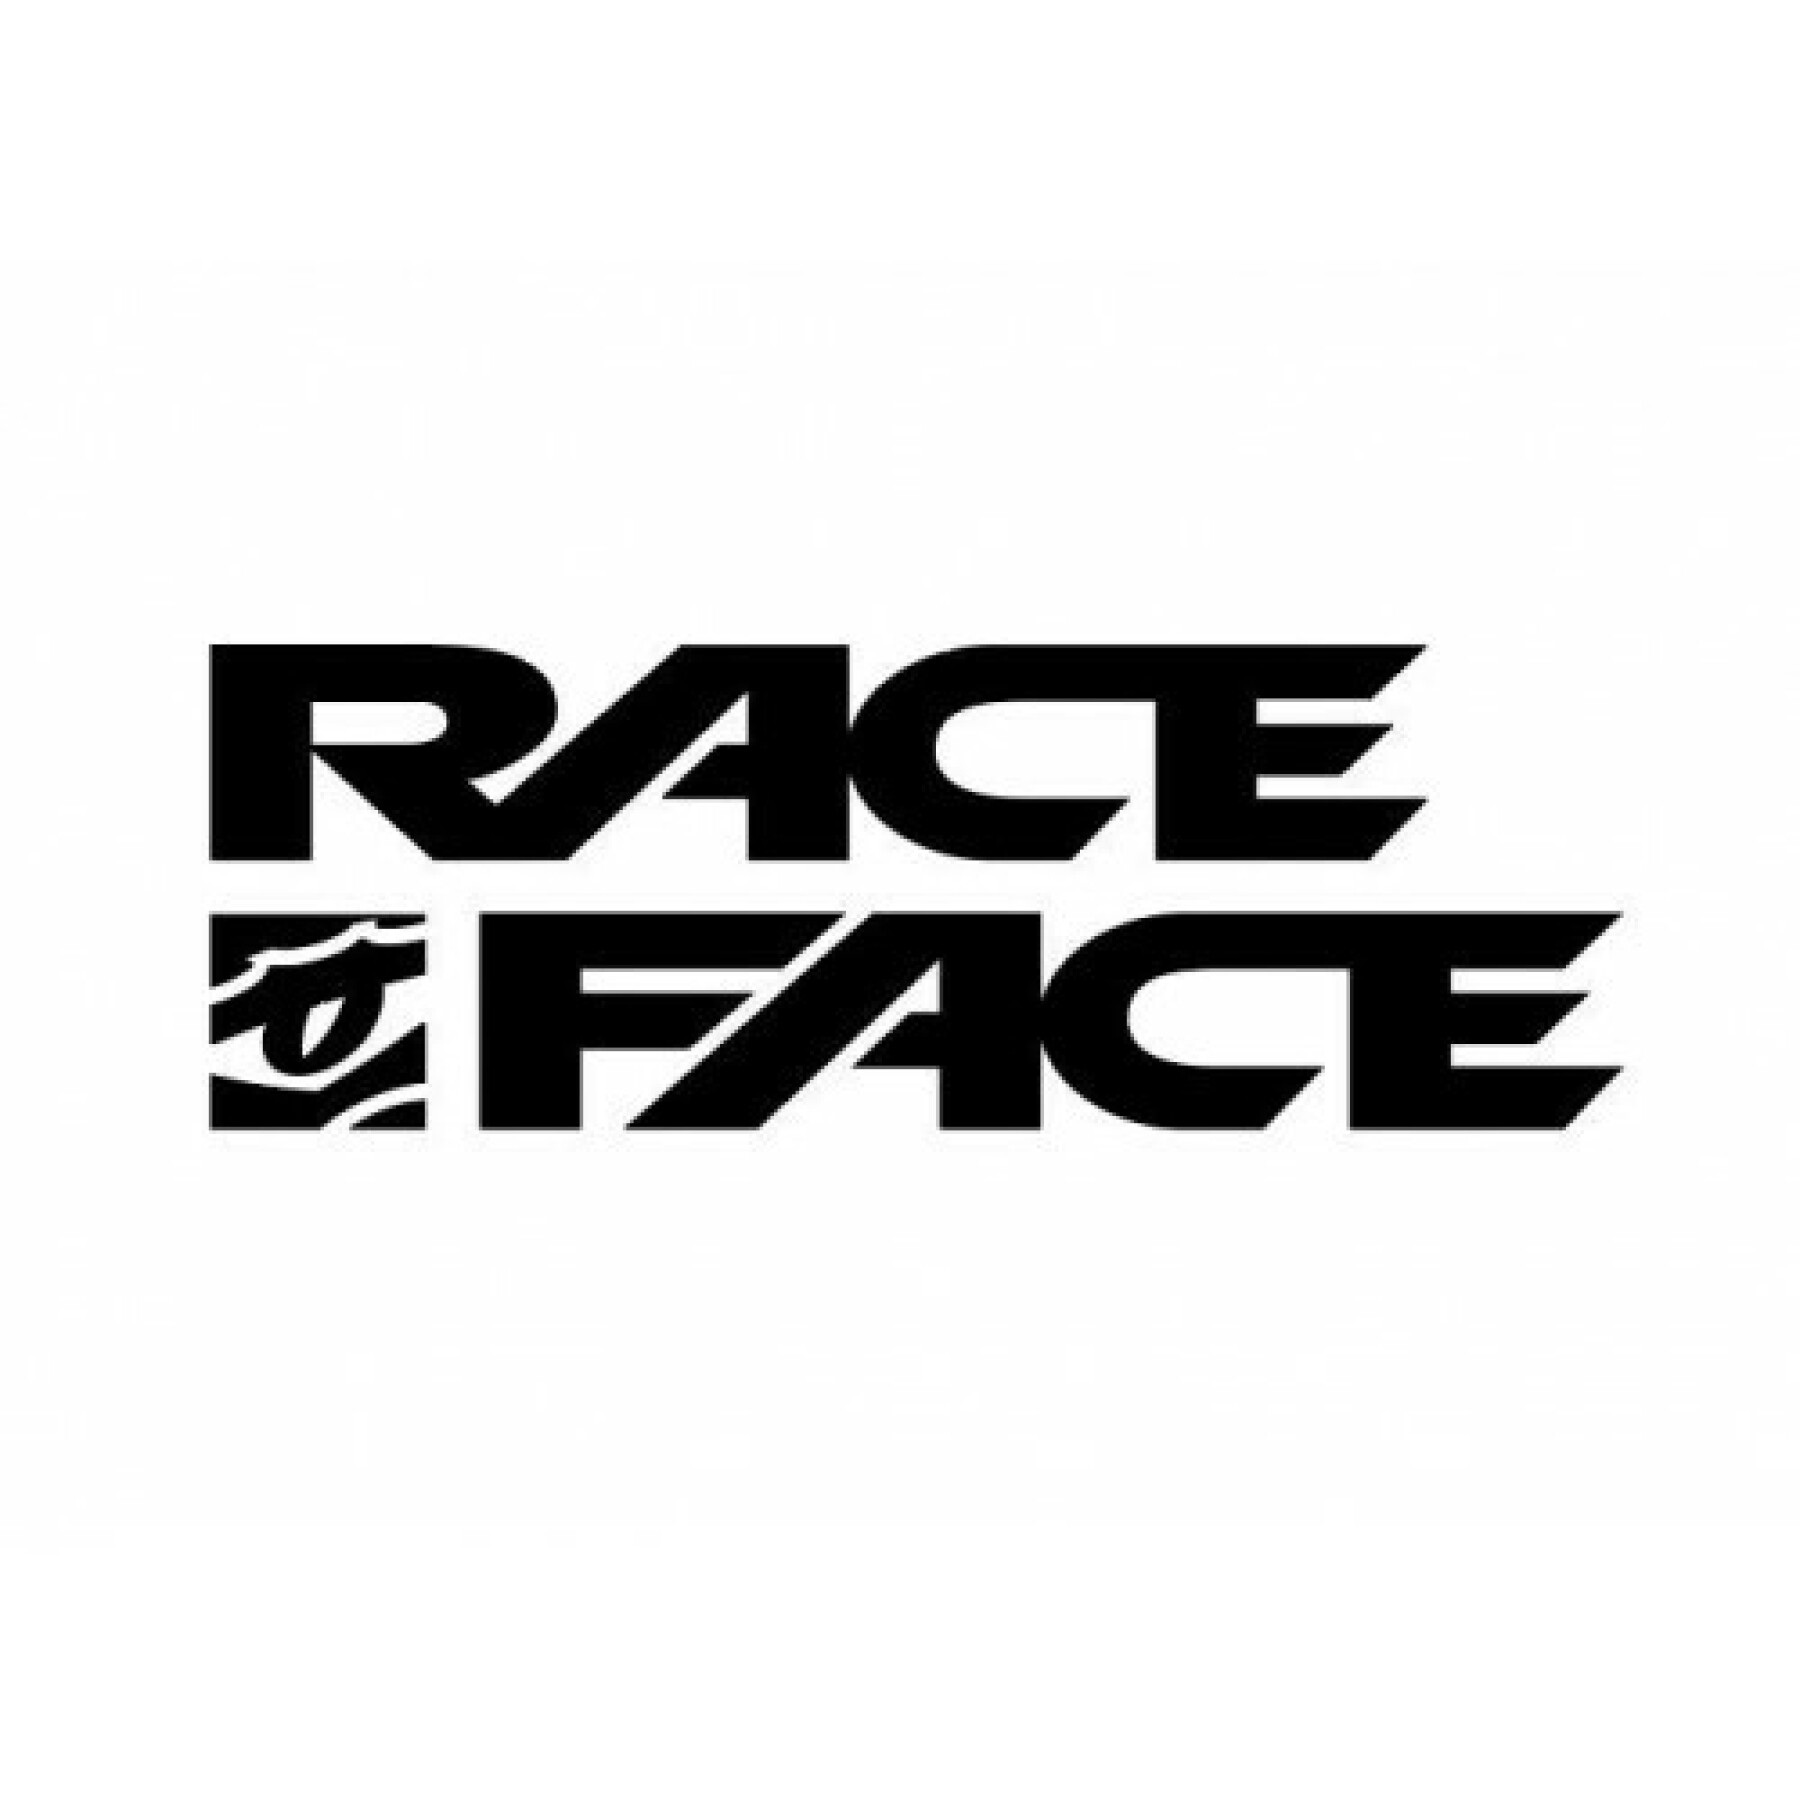 Rim Race Face arc offset - 30 - 27.5 - 28t